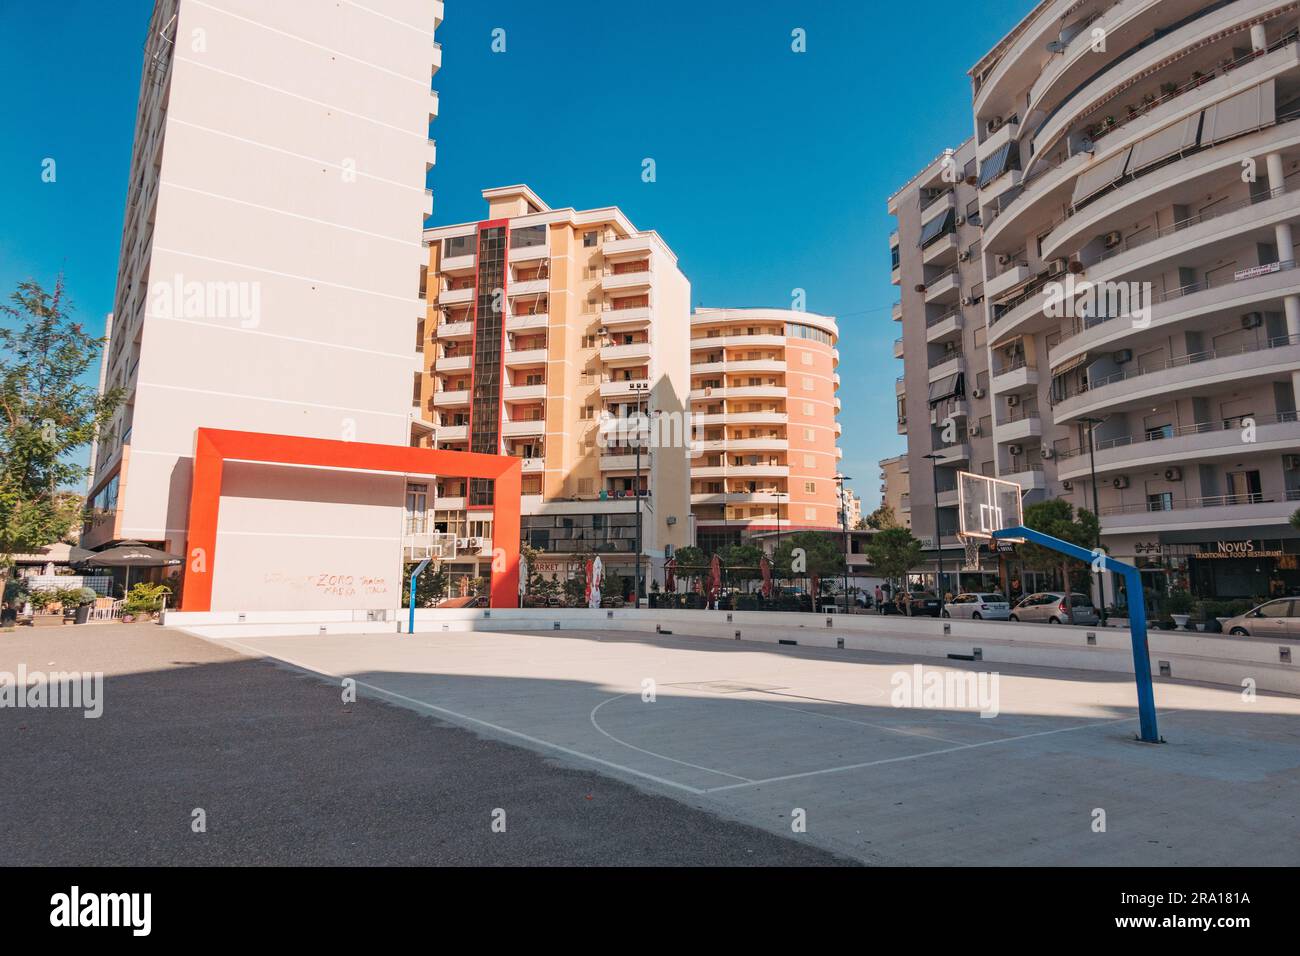 Un campo da pallacanestro pubblico tra blocchi di appartamenti con una grande scultura rettangolare rossa nella città costiera di Vlorë, nel sud dell'Albania Foto Stock